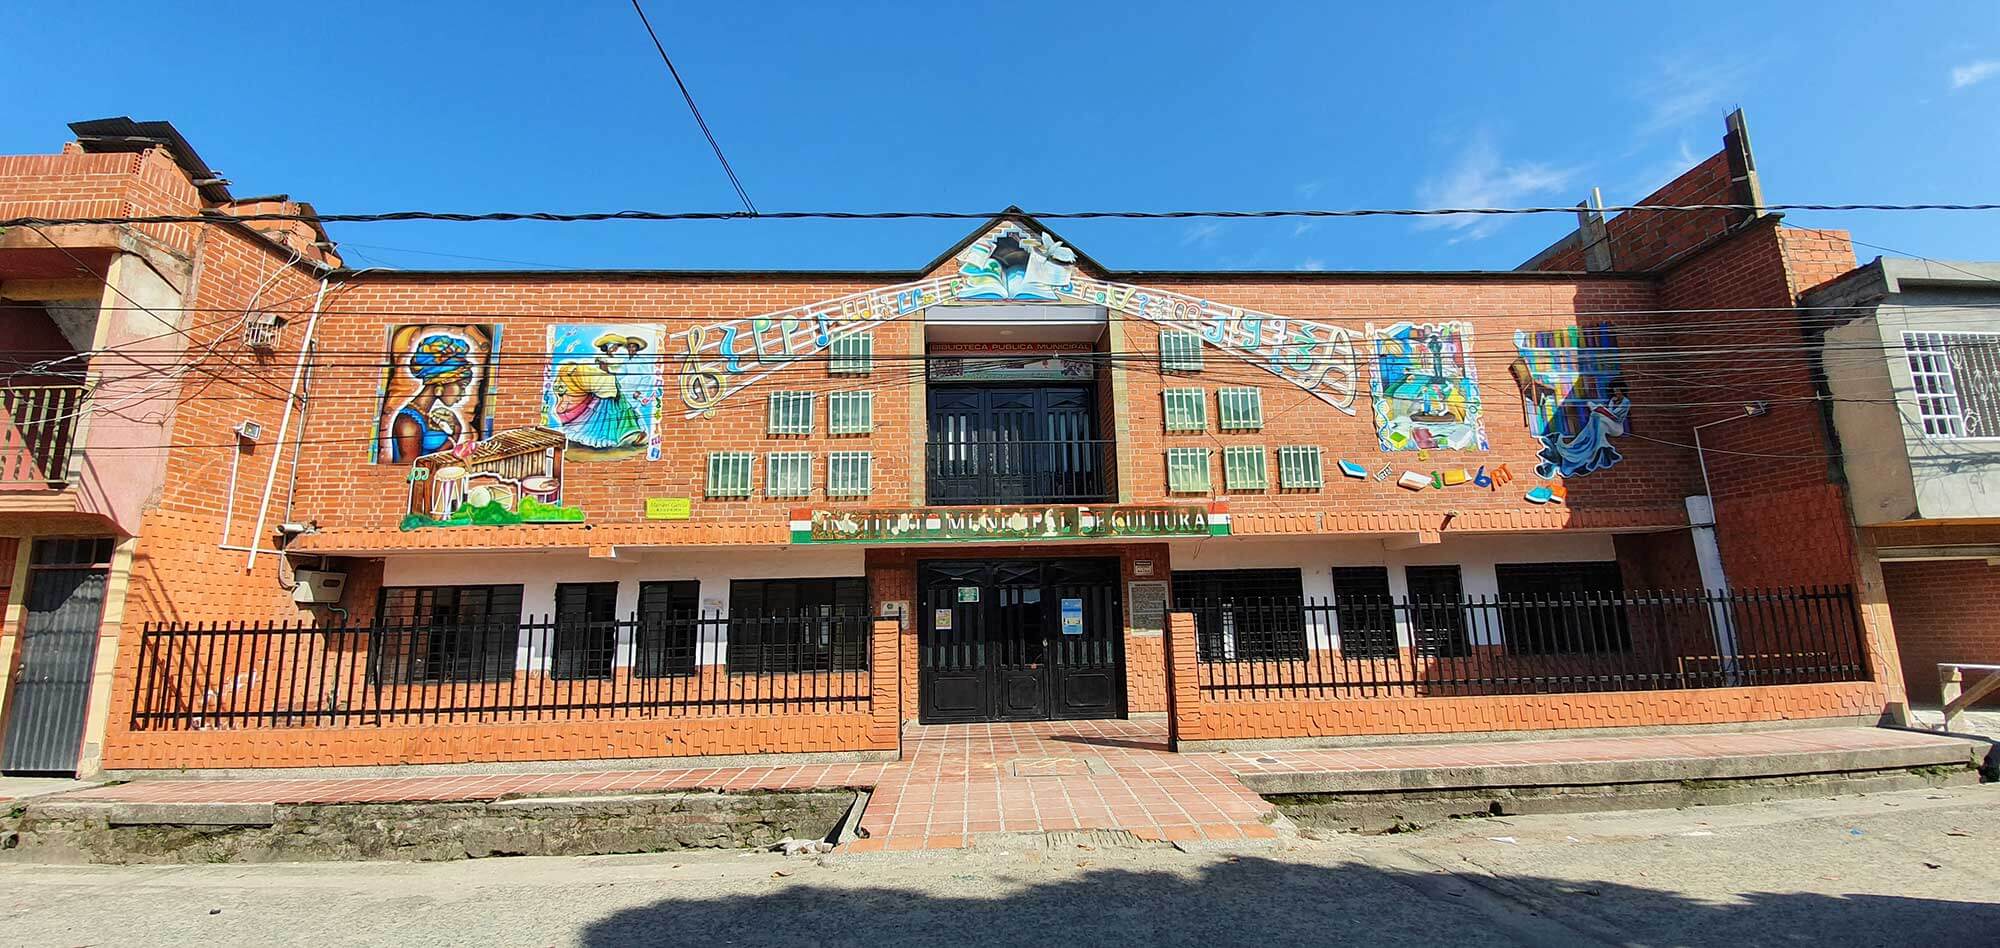 “Instituto Municipal de Cultura”. Fotografía: Jaír Cerón Velasco para el CNMH, 2020.